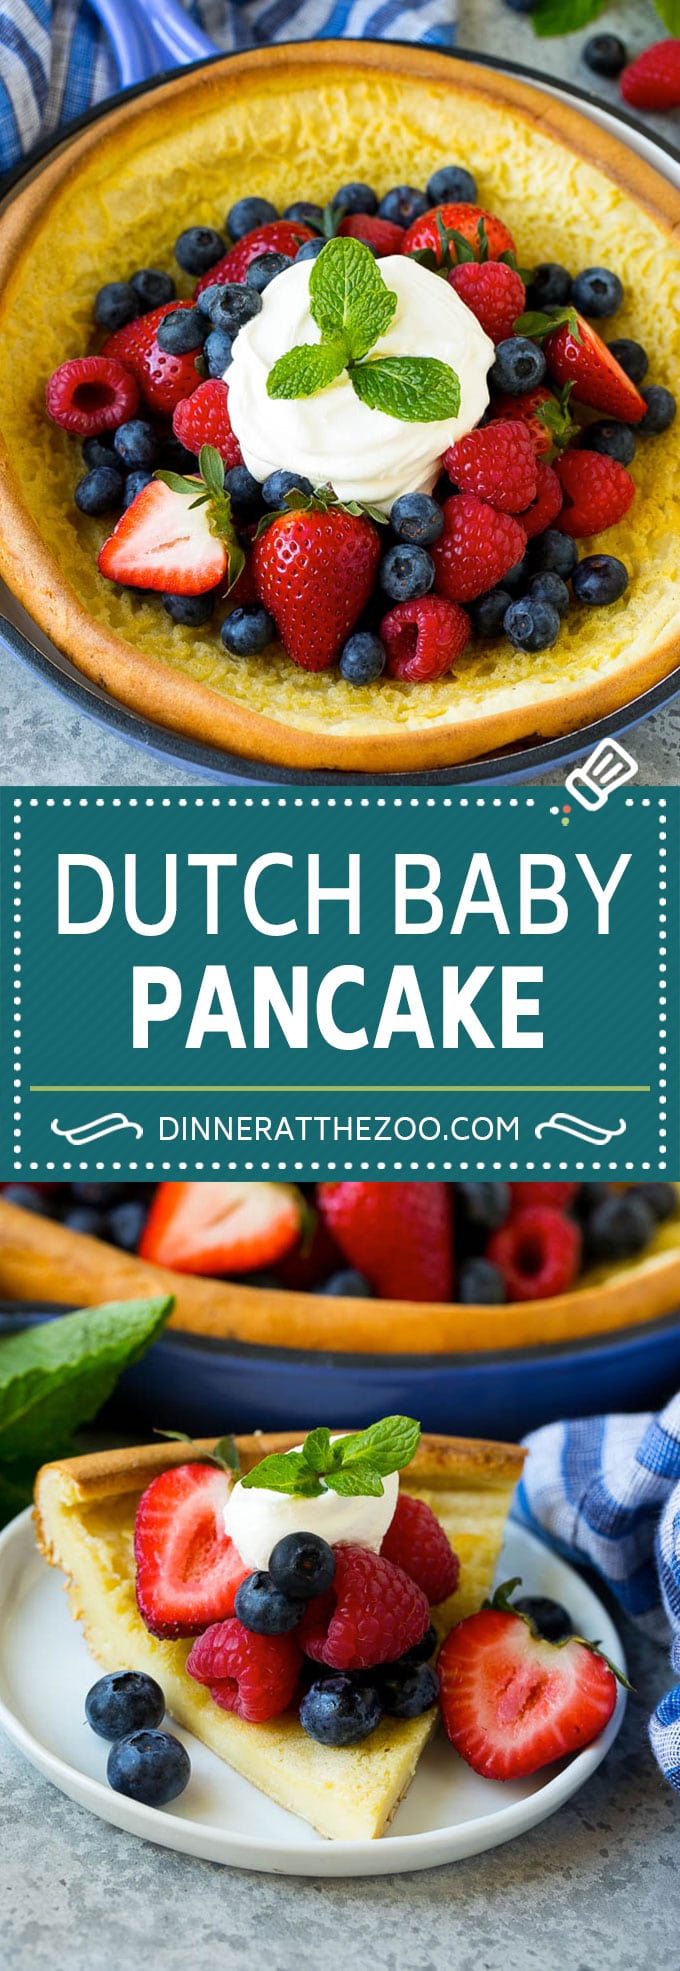 Dutch Baby Pancake Recipe | Puffed Pancake | Skillet Pancake #pancakes #breakfast #brunch #dinneratthezoo